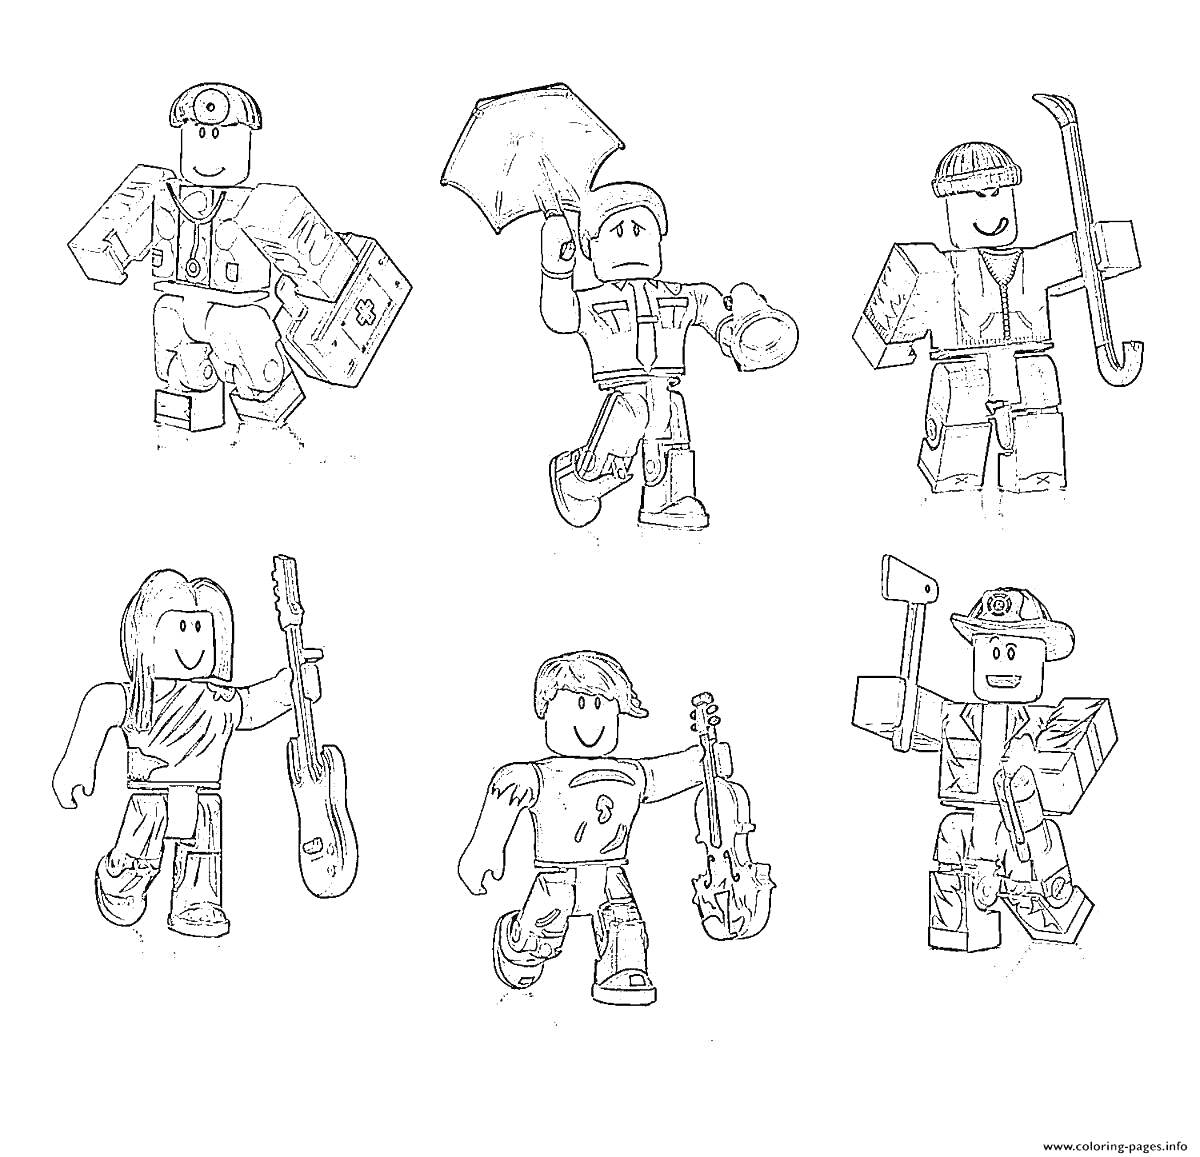 Раскраска Аватары Roblox с различными предметами (лицом с киркой, игрок с гитарой, лицо с зонтом, персонаж с лопатой, пользователь с киркой и топором, аватар с лопатой)